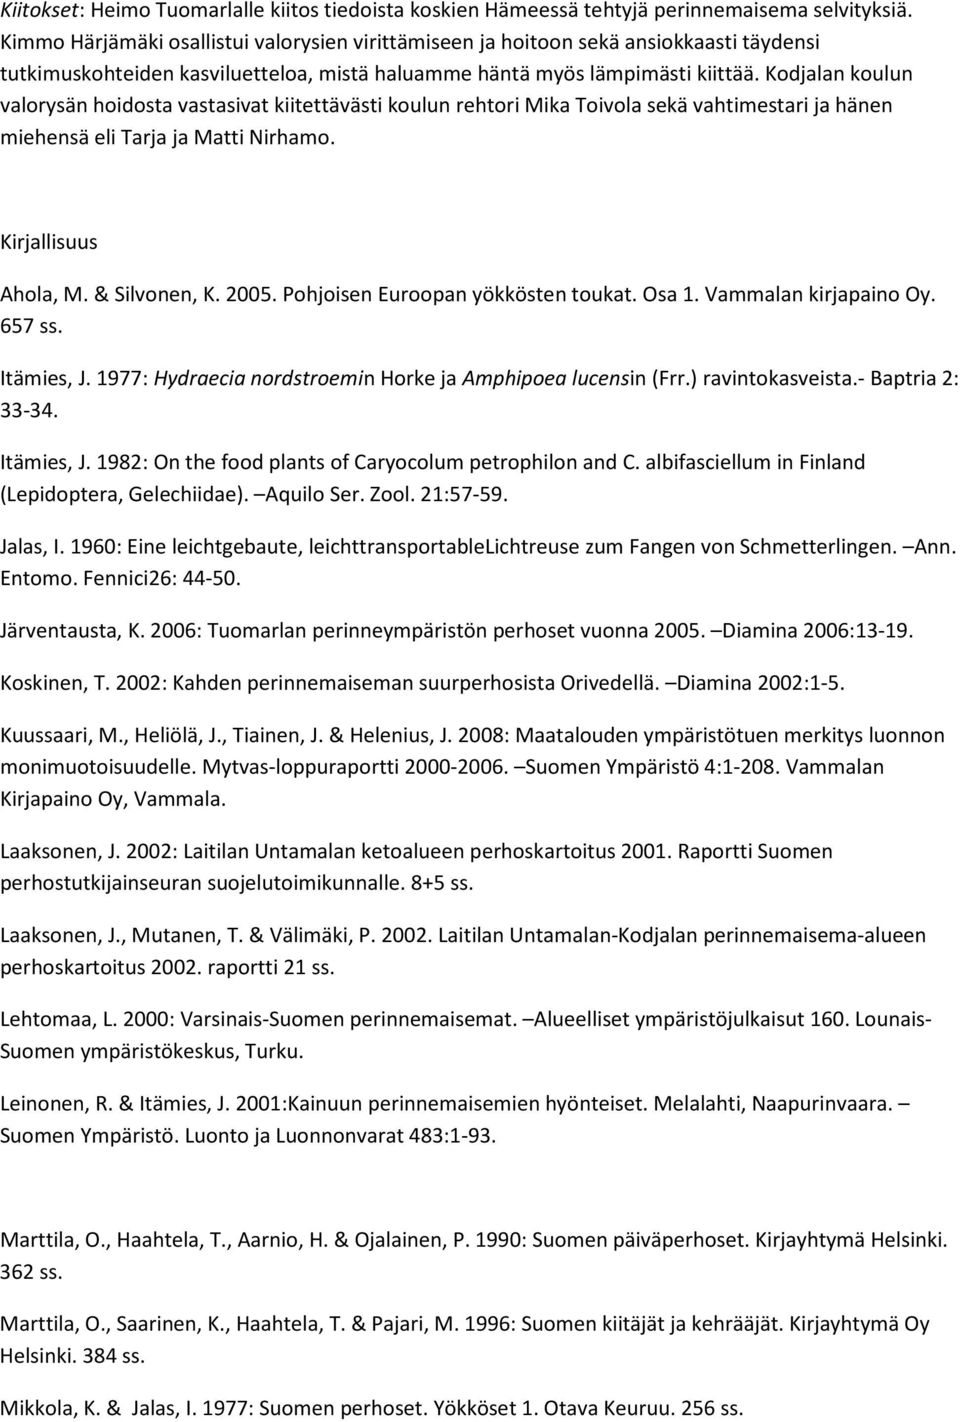 Kodjalan koulun valorysän hoidosta vastasivat kiitettävästi koulun rehtori Mika Toivola sekä vahtimestari ja hänen miehensä eli Tarja ja Matti Nirhamo. Kirjallisuus Ahola, M. & Silvonen, K. 2005.